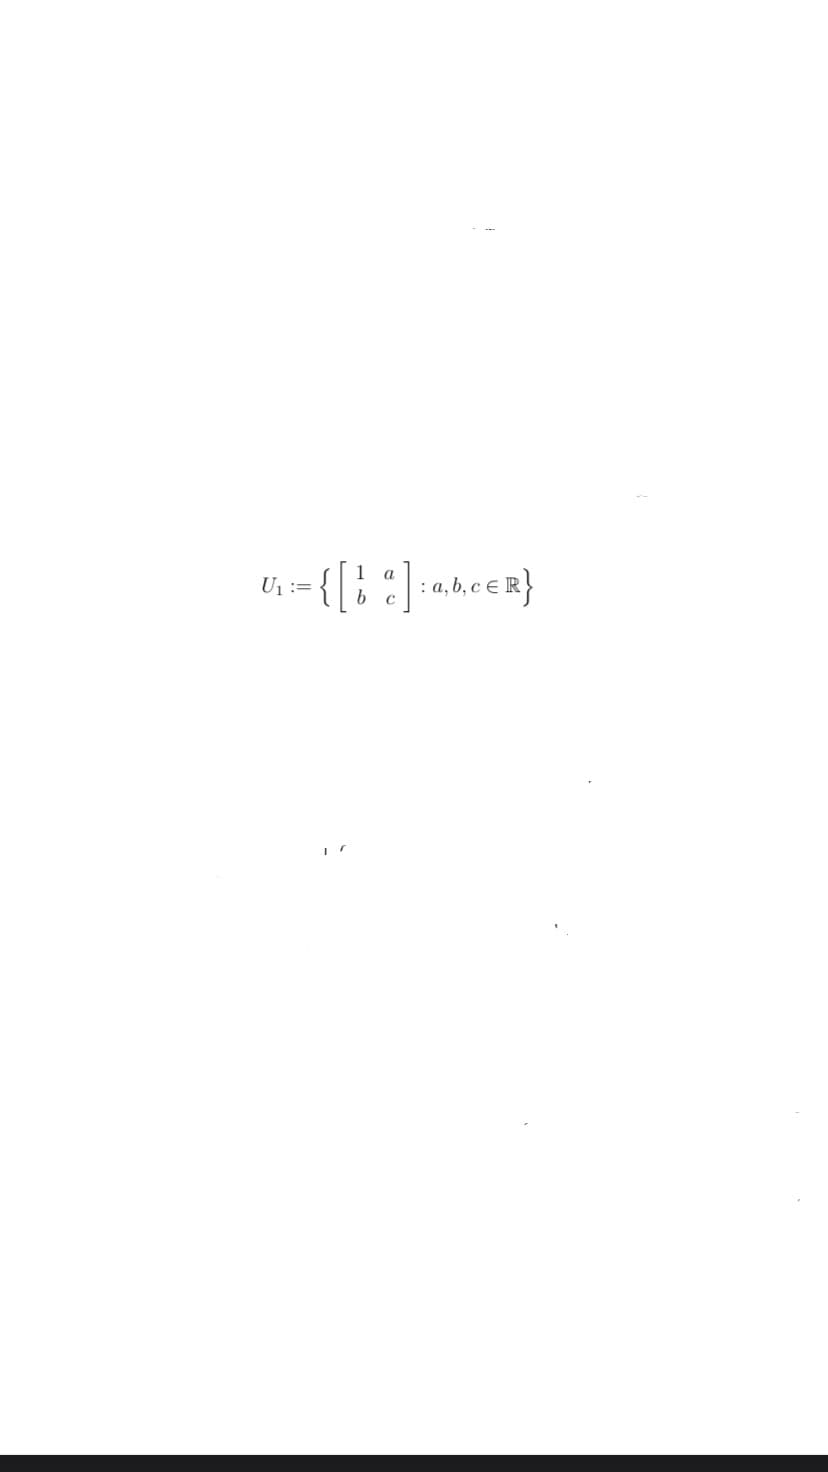 U₁ =
{ [ 1 ] : a, b, c = R }